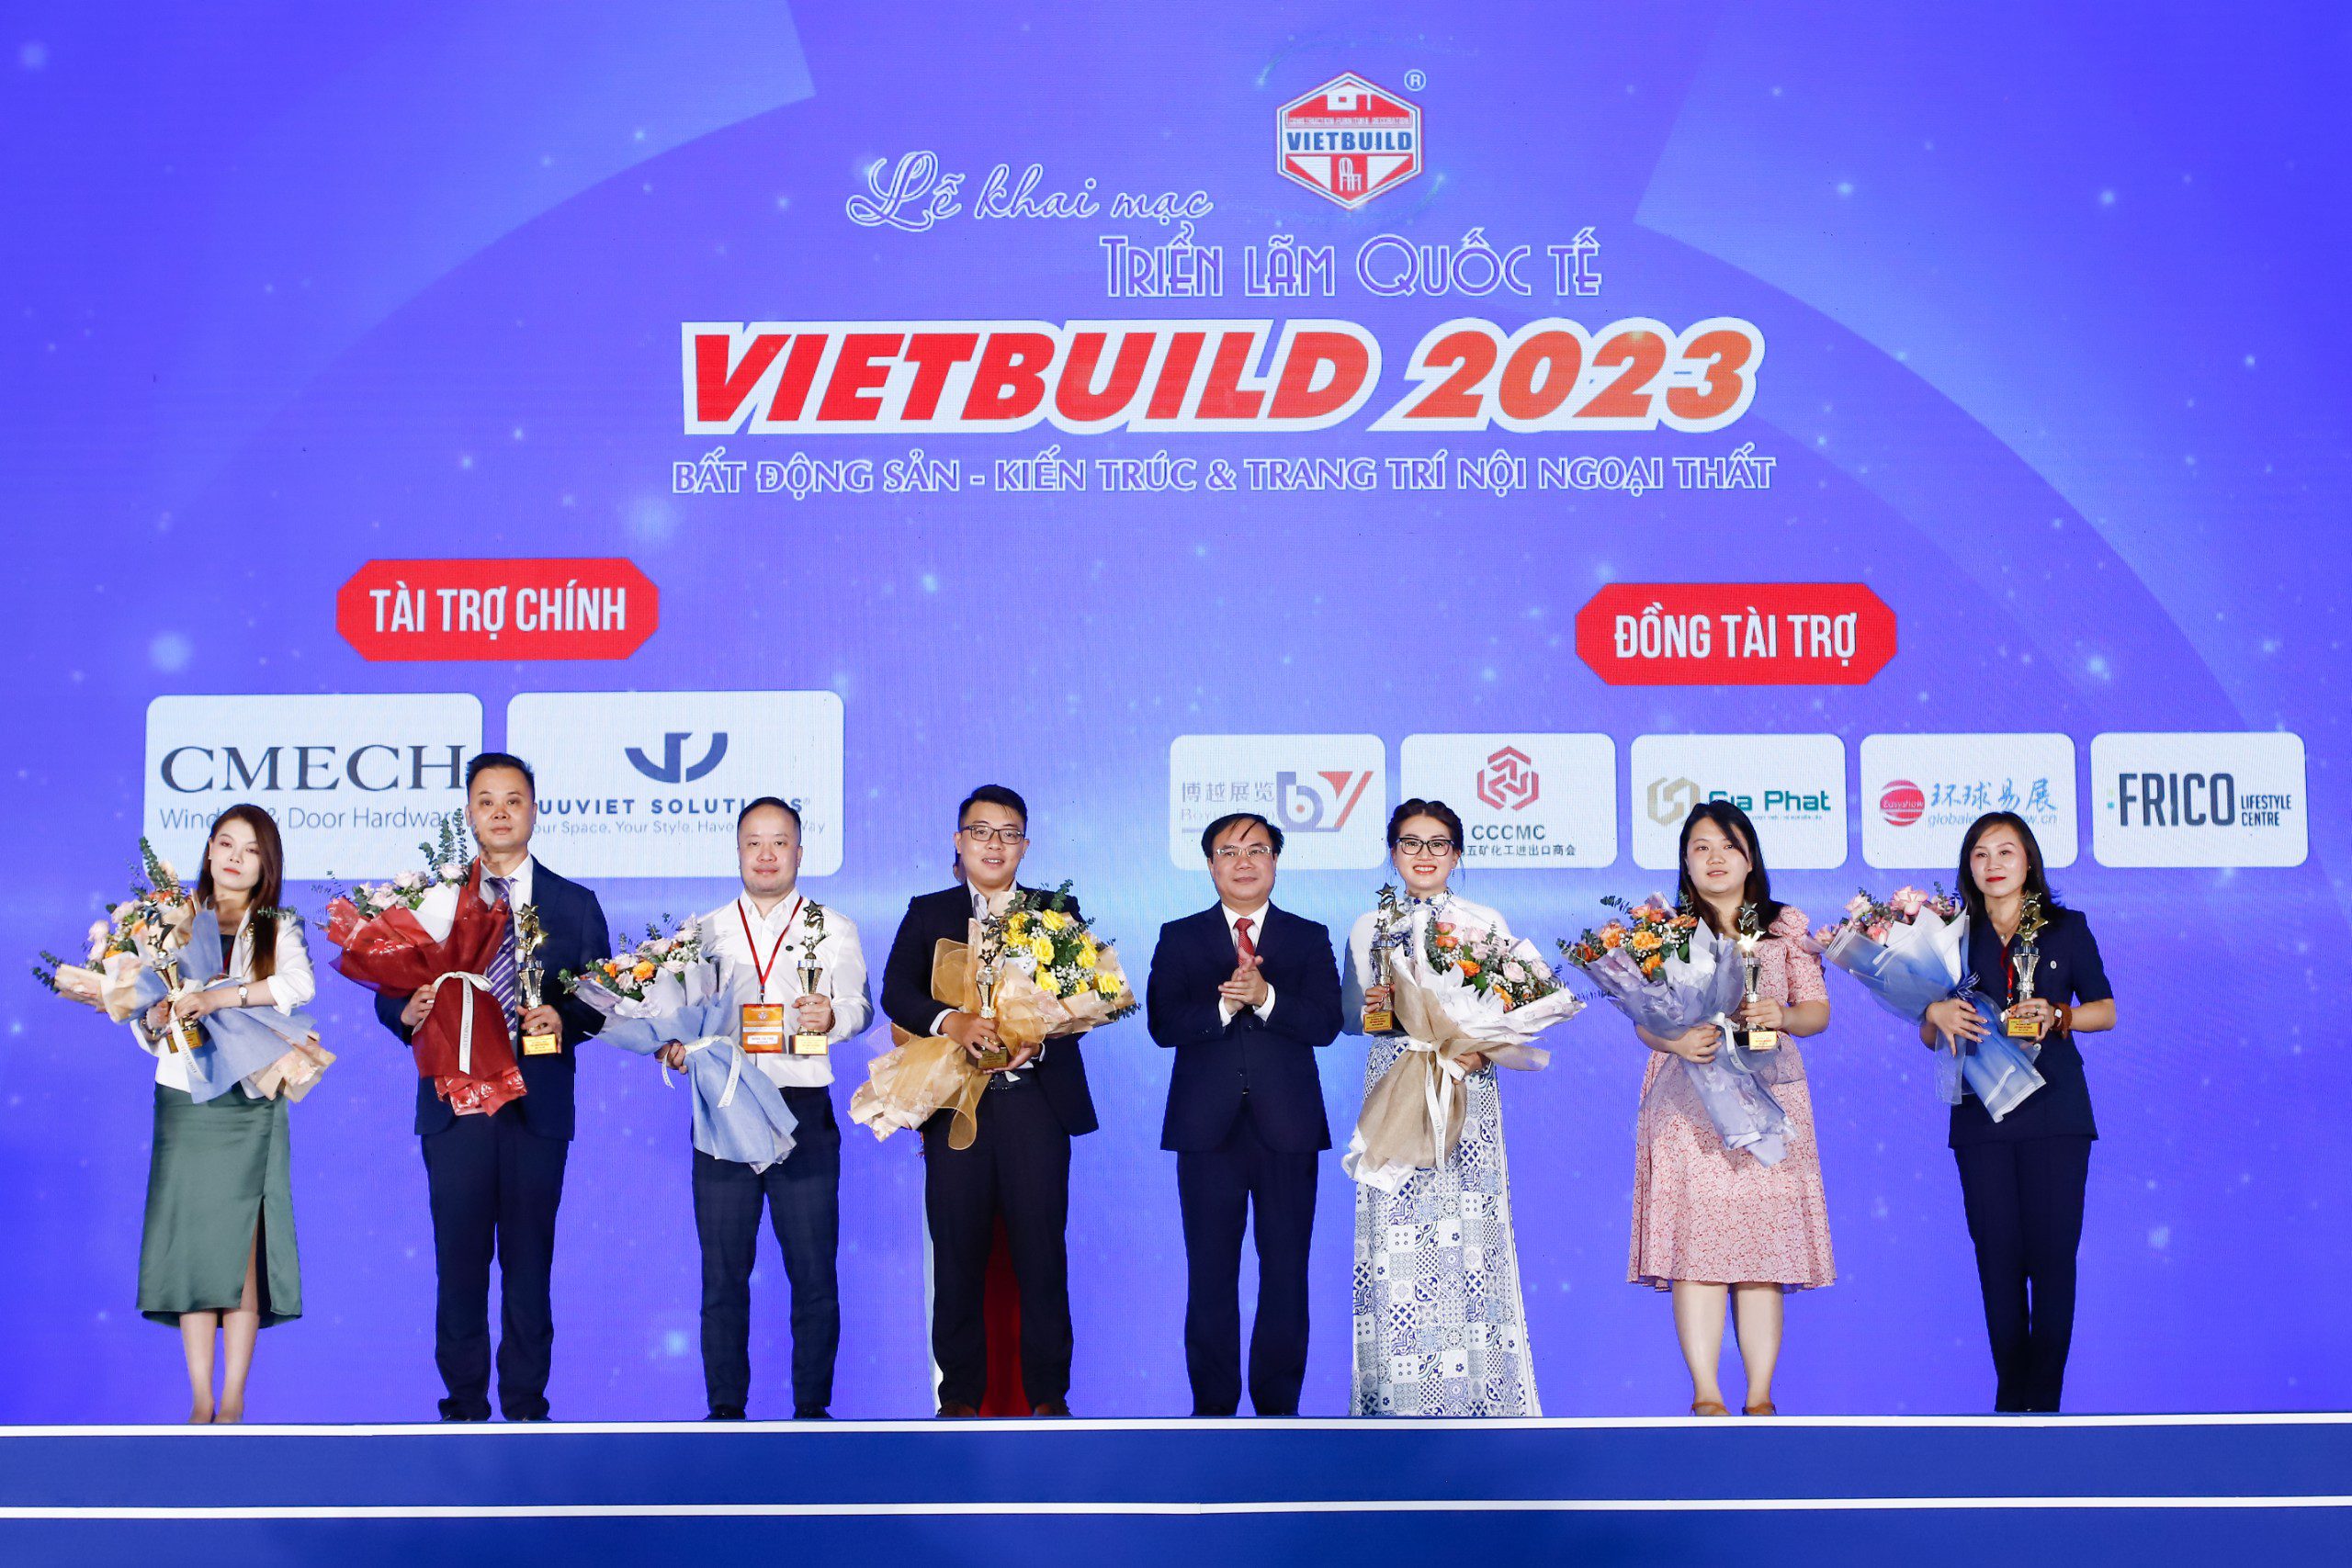 Giải pháp Ưu Việt nhà tài trợ chính cho sự kiện Vietbuild 2023